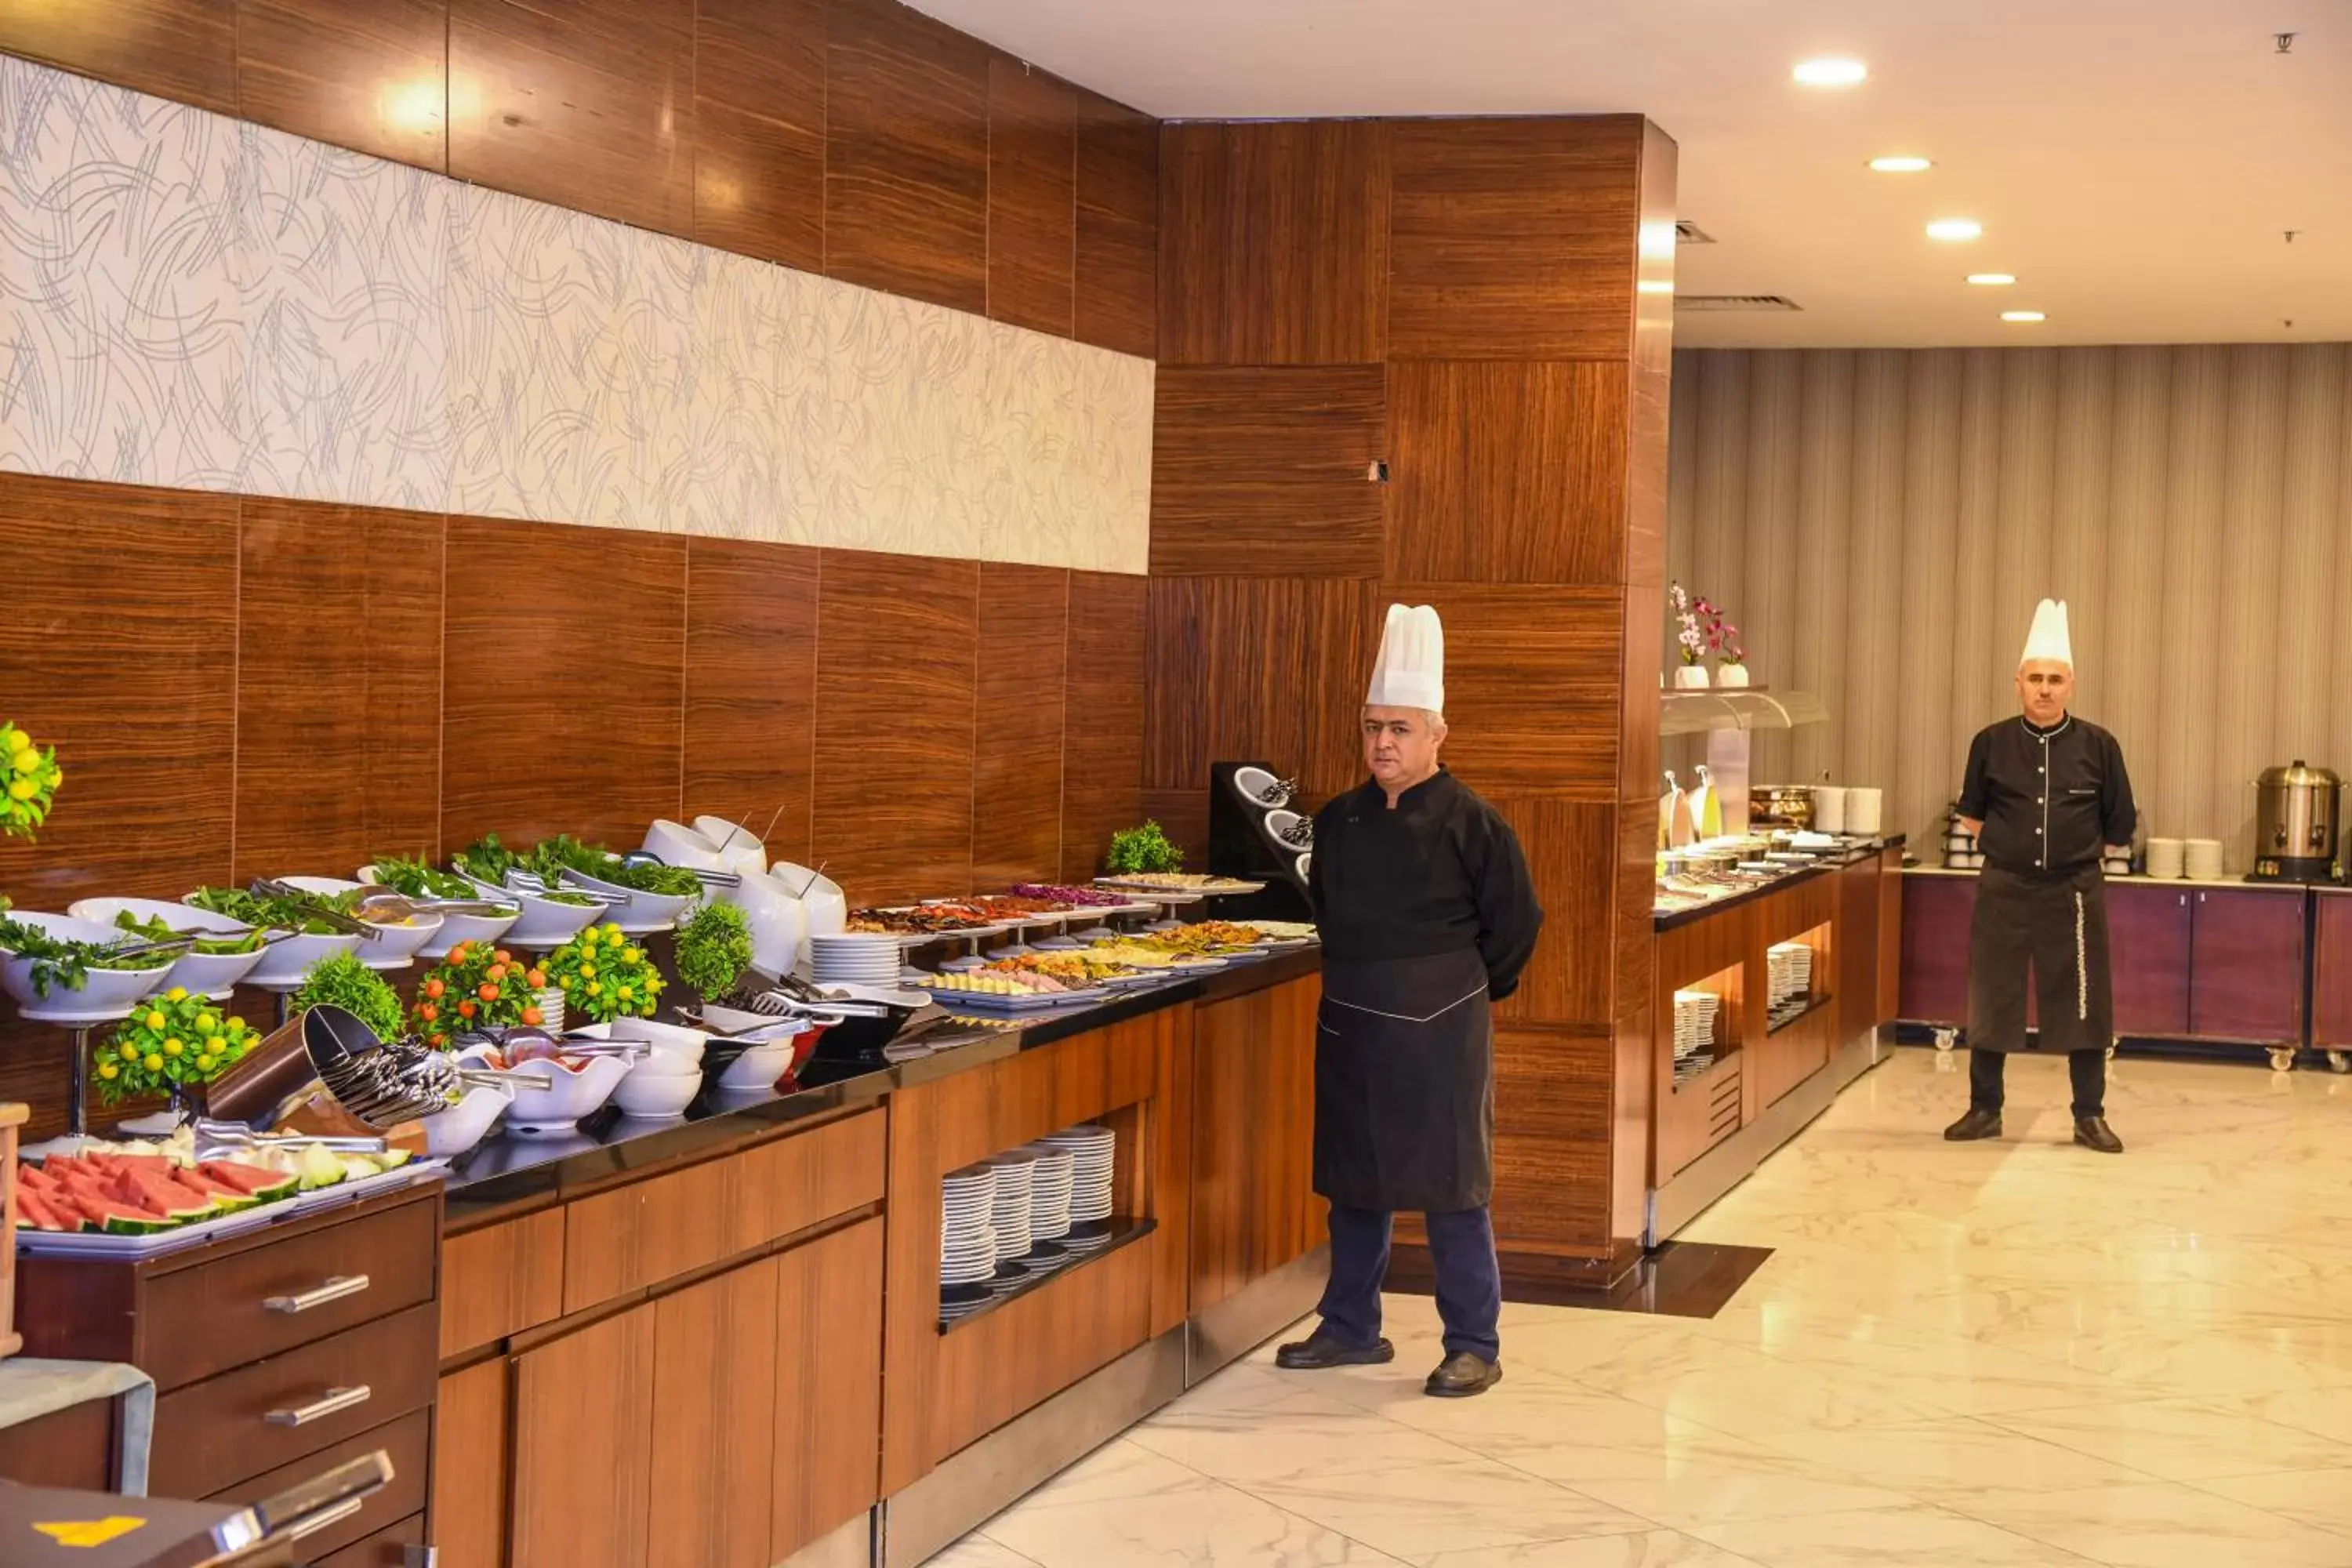 Buffet breakfast in Grand S Hotel